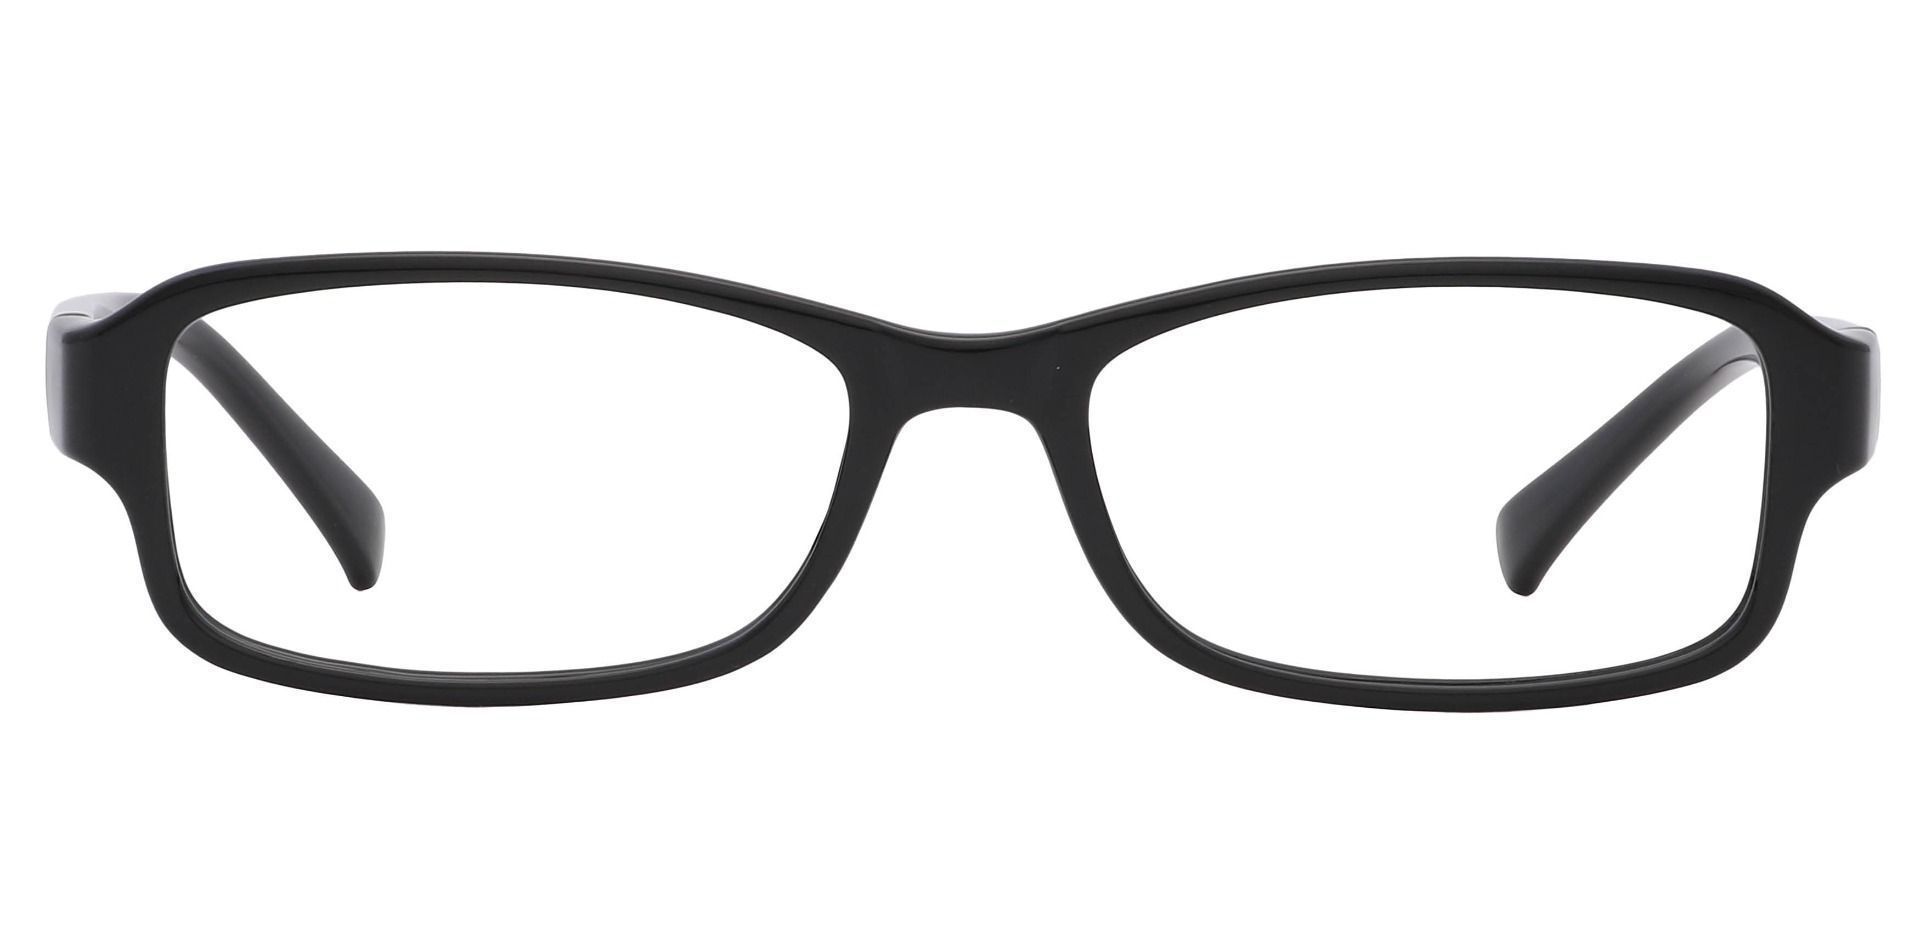 Rowan Rectangle Eyeglasses Frame - Glossy Black 